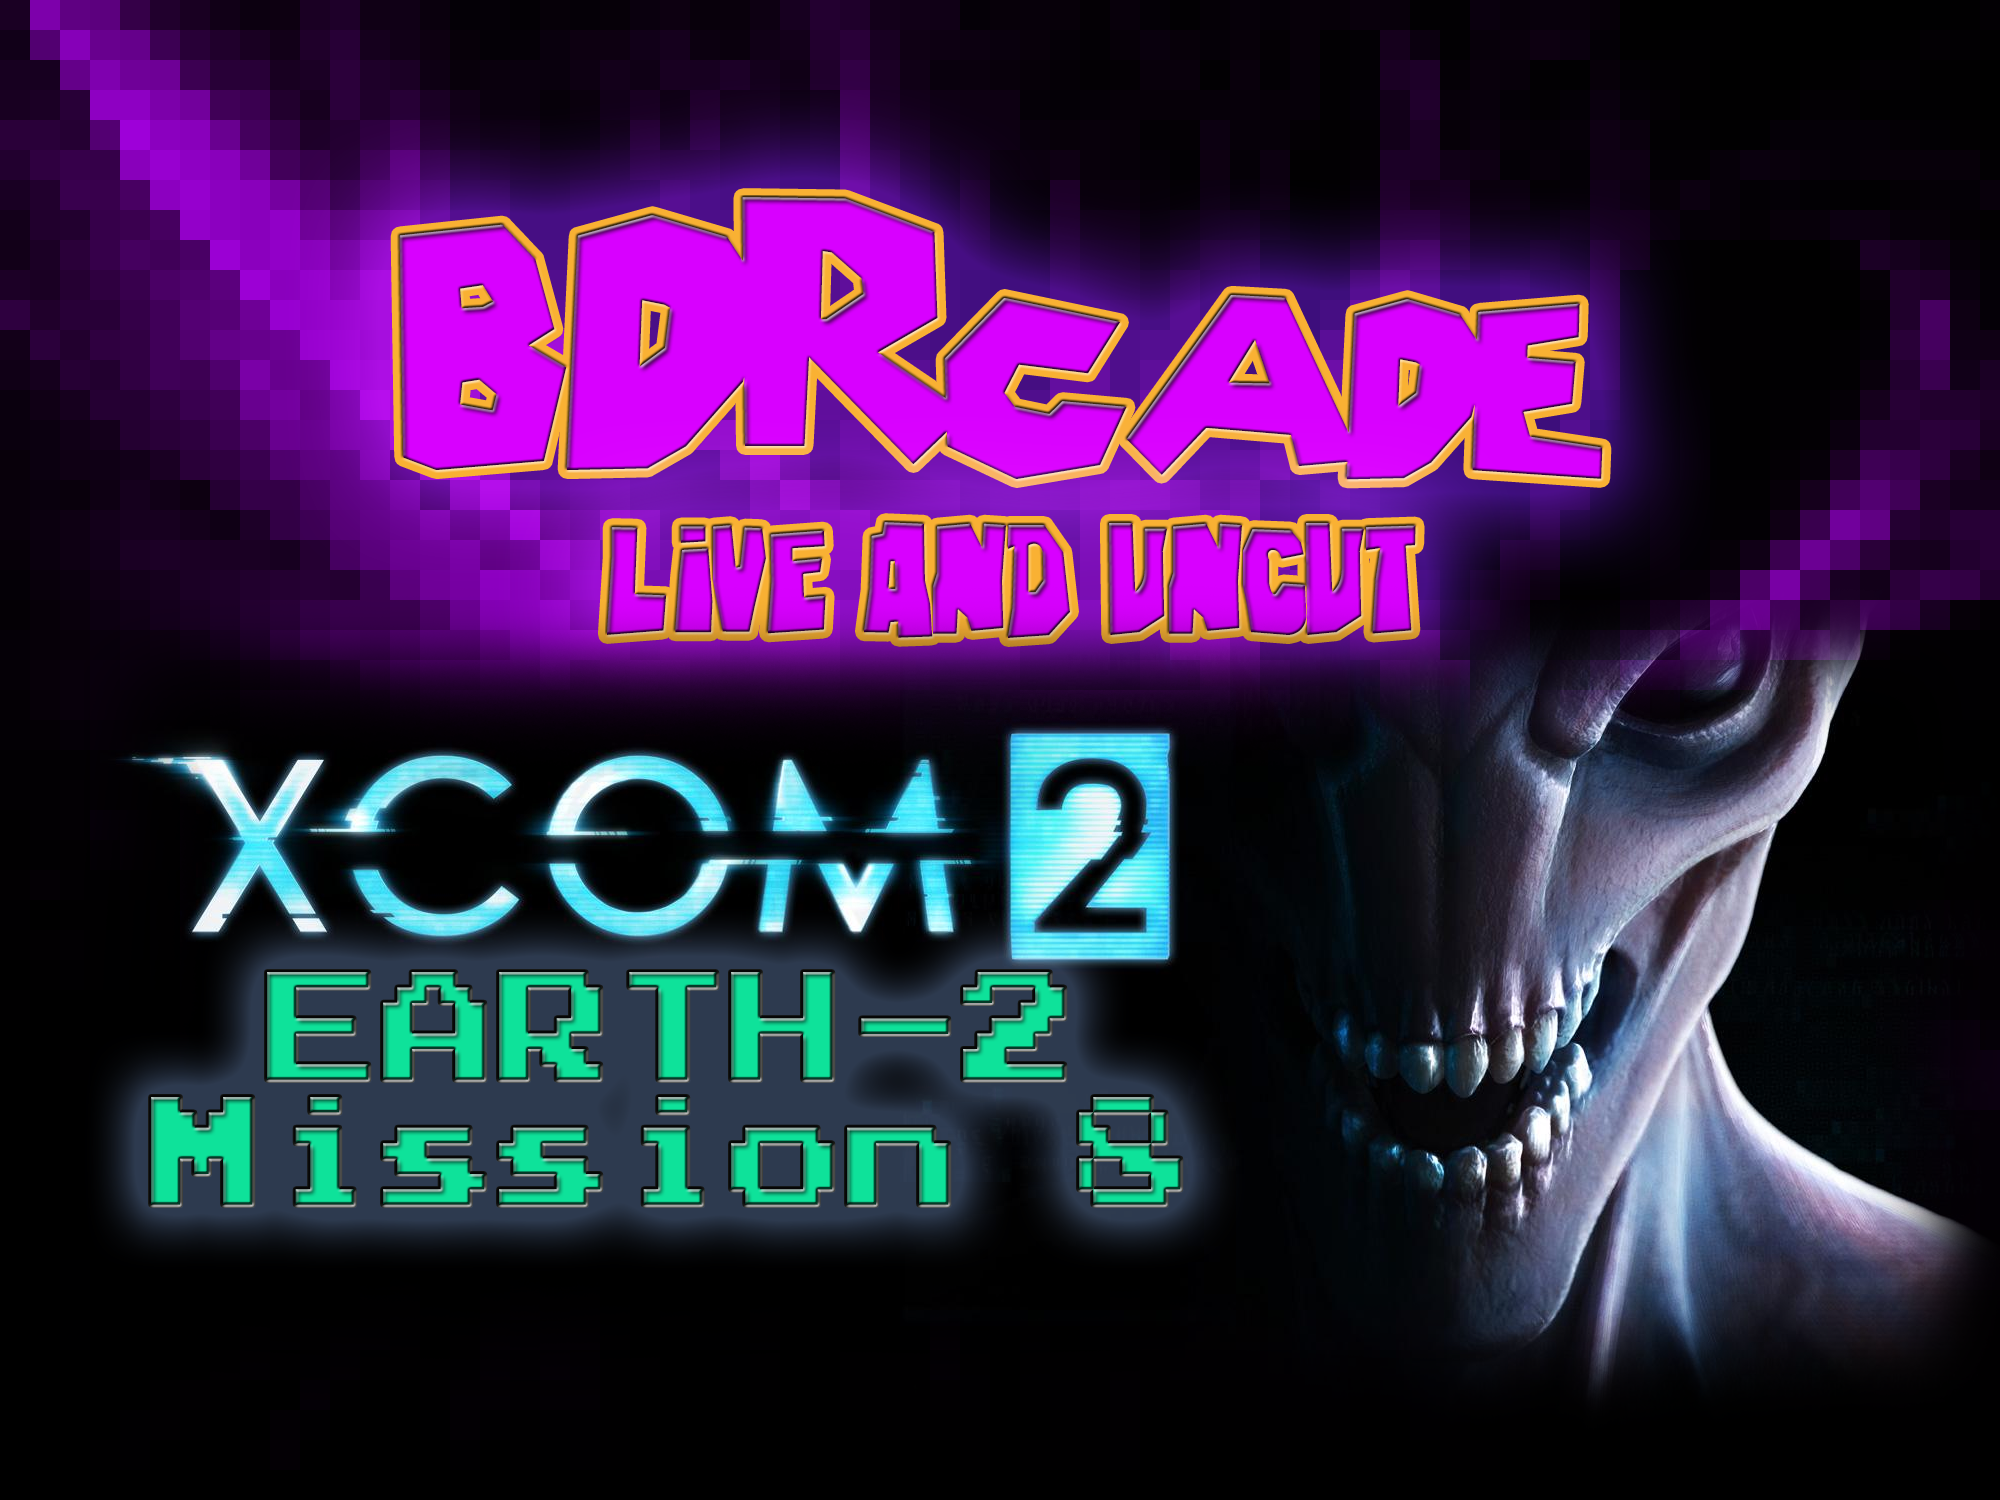 XCOM 2 (Earth-2) : Mission 8 – A BDRcade Live Stream